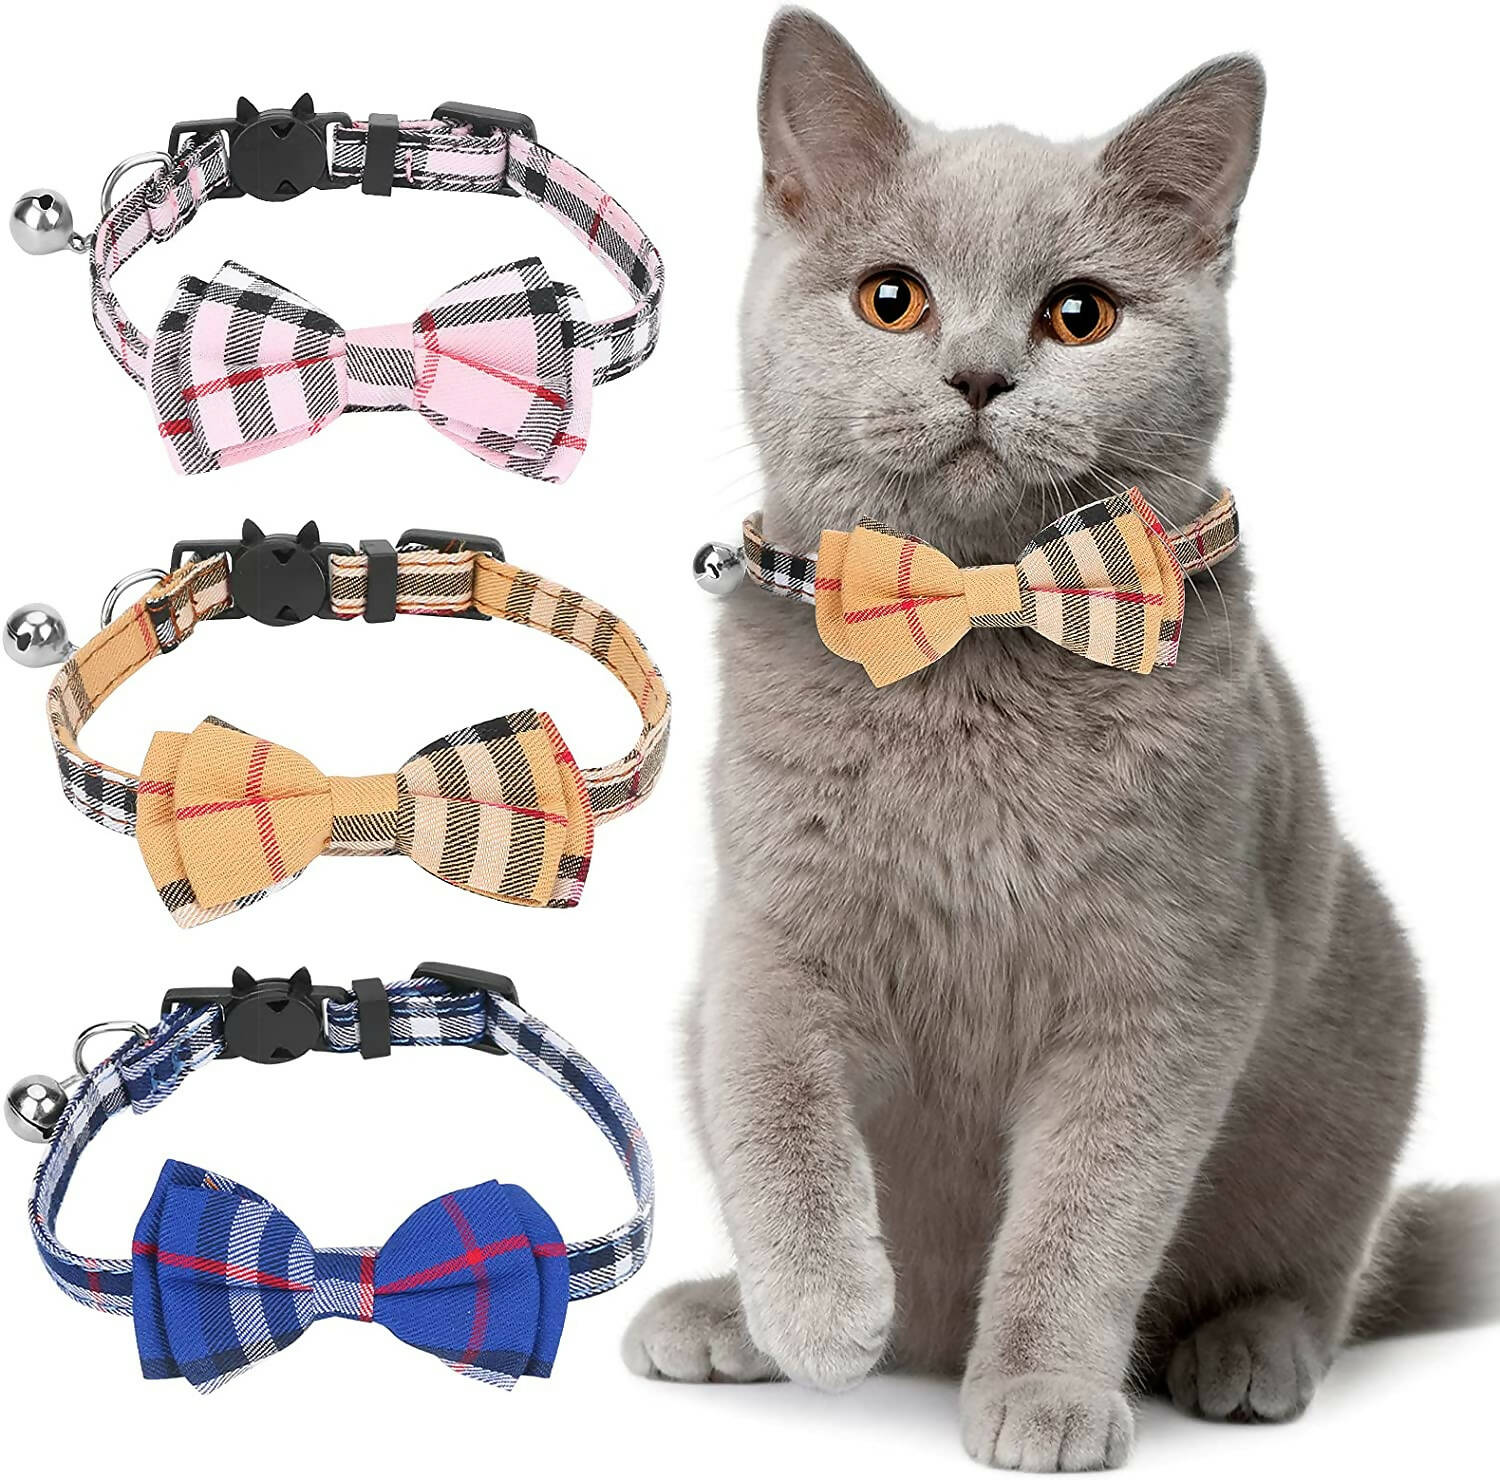 ربطة عنق ( كرفتة ) للقطط والكلاب موديلات مختلفة